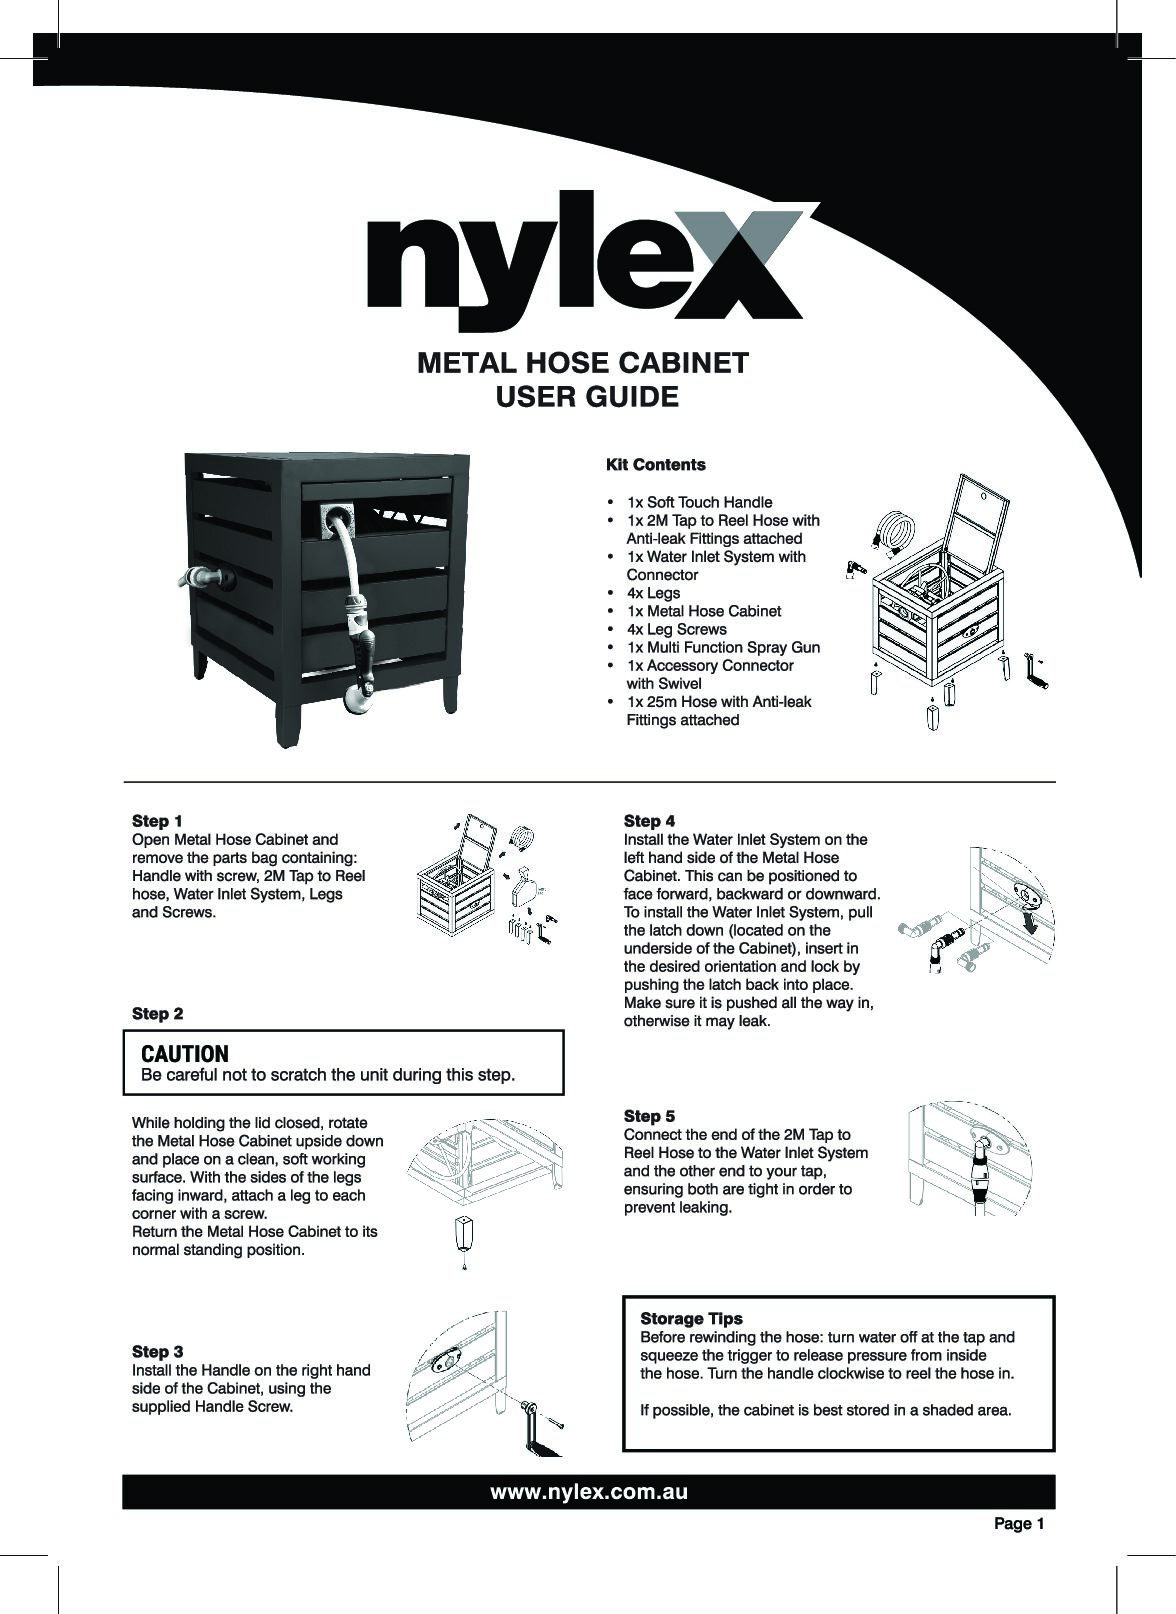 Resources - Nylex